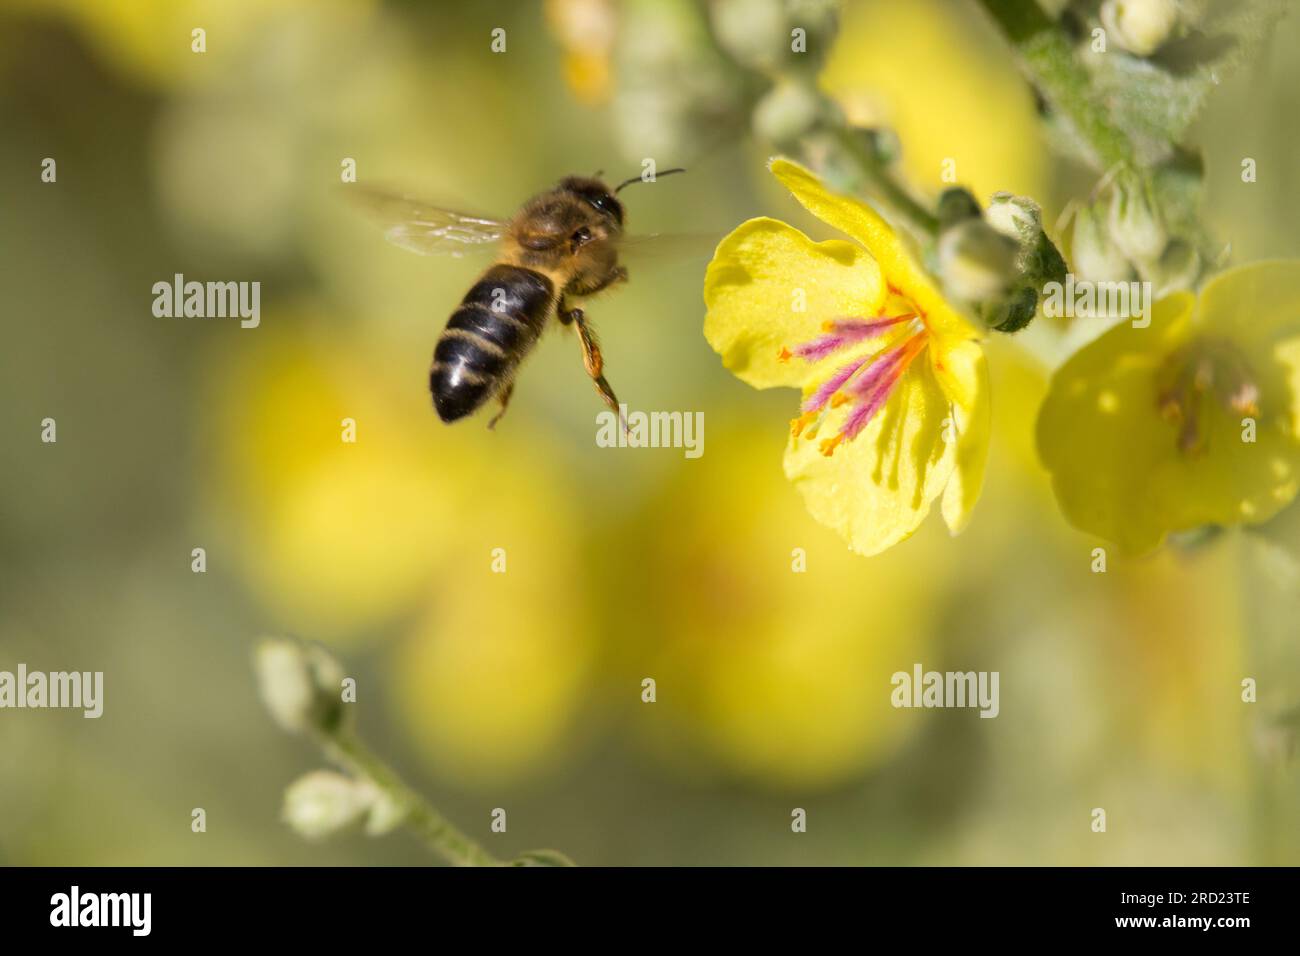 Apis mellifera volant vers la fleur jaune de la plante Verbascum pour se nourrir de nectar tout en pollinisant la plante. Banque D'Images